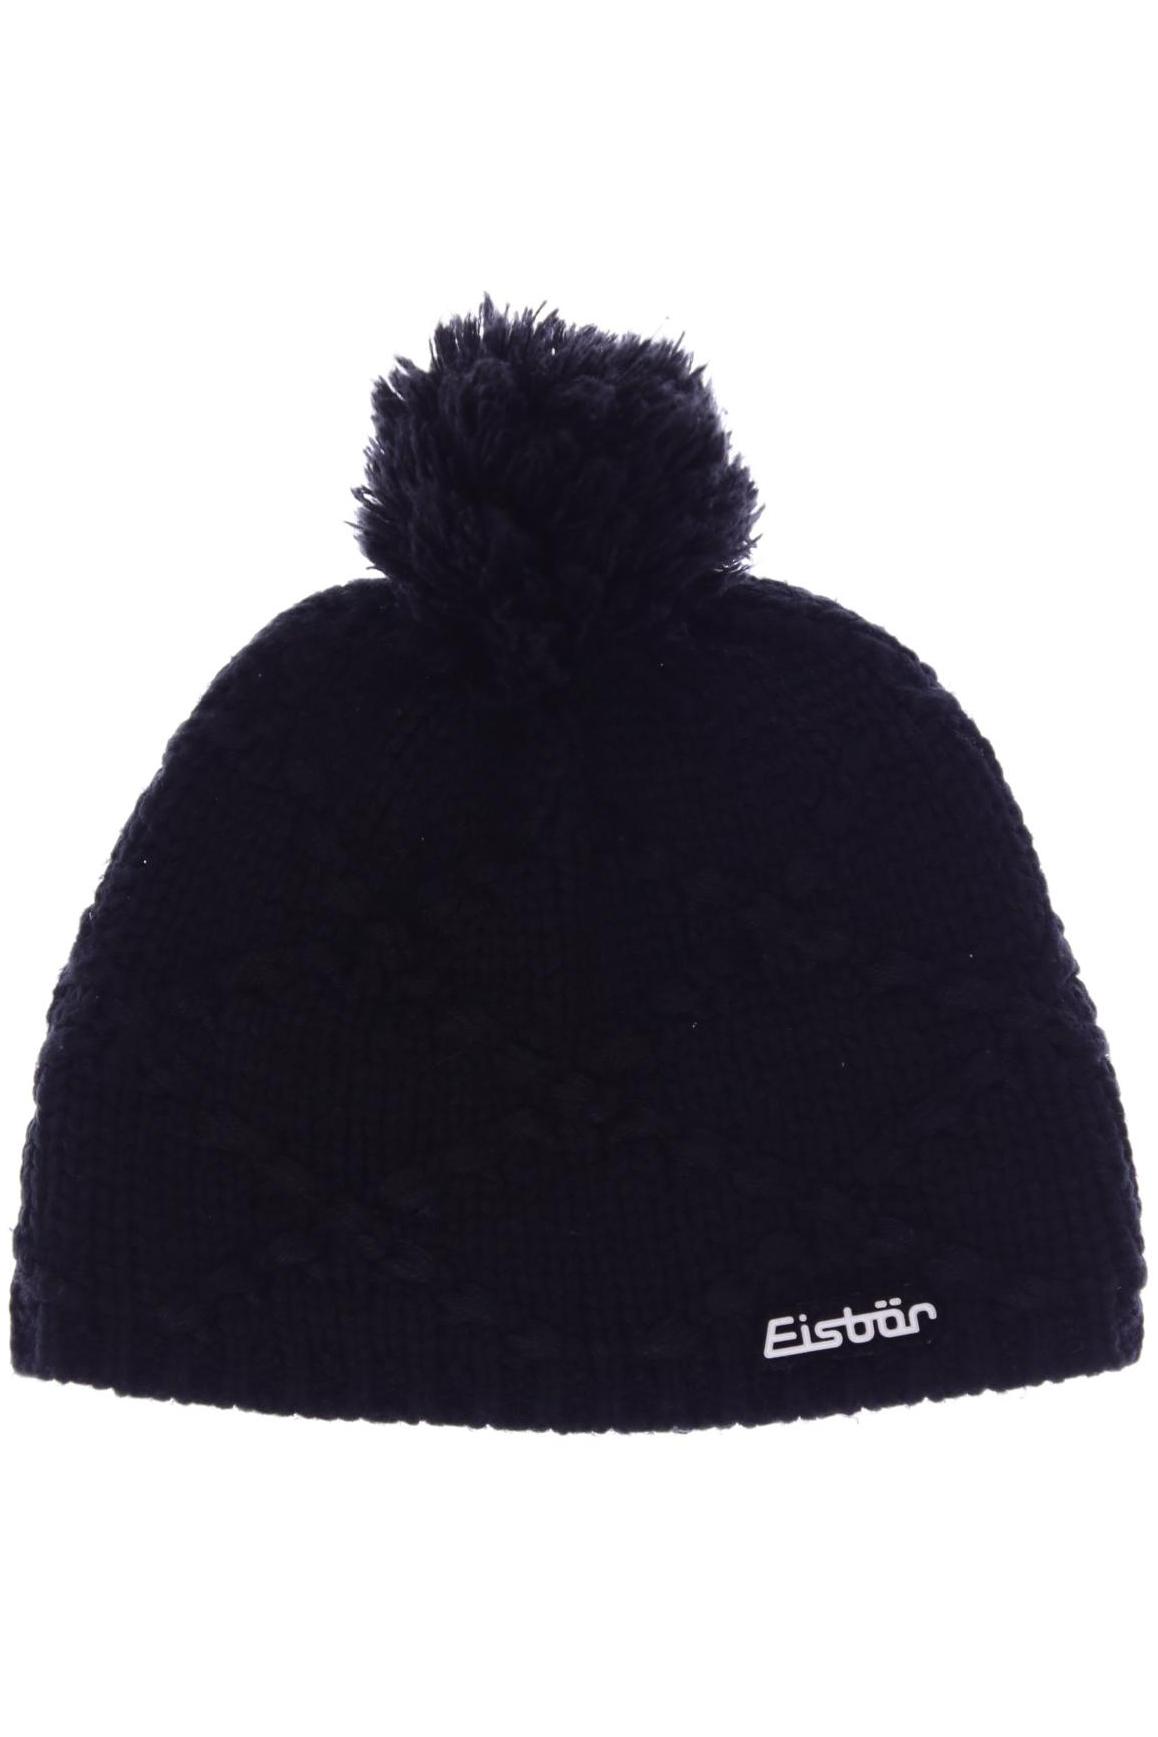 Eisbär Damen Hut/Mütze, schwarz von EISBÄR